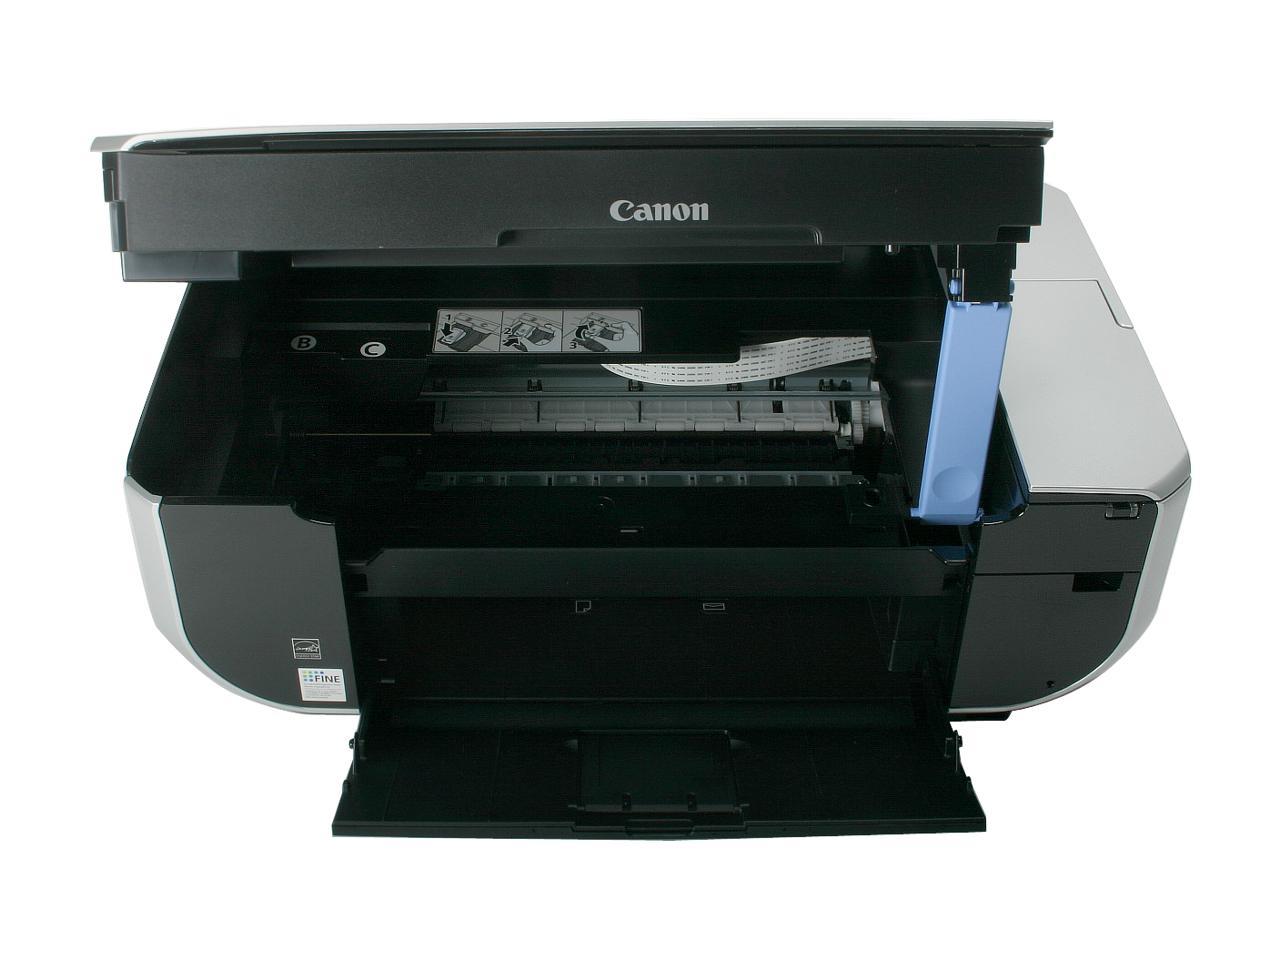 canon mp470 printer head alignment